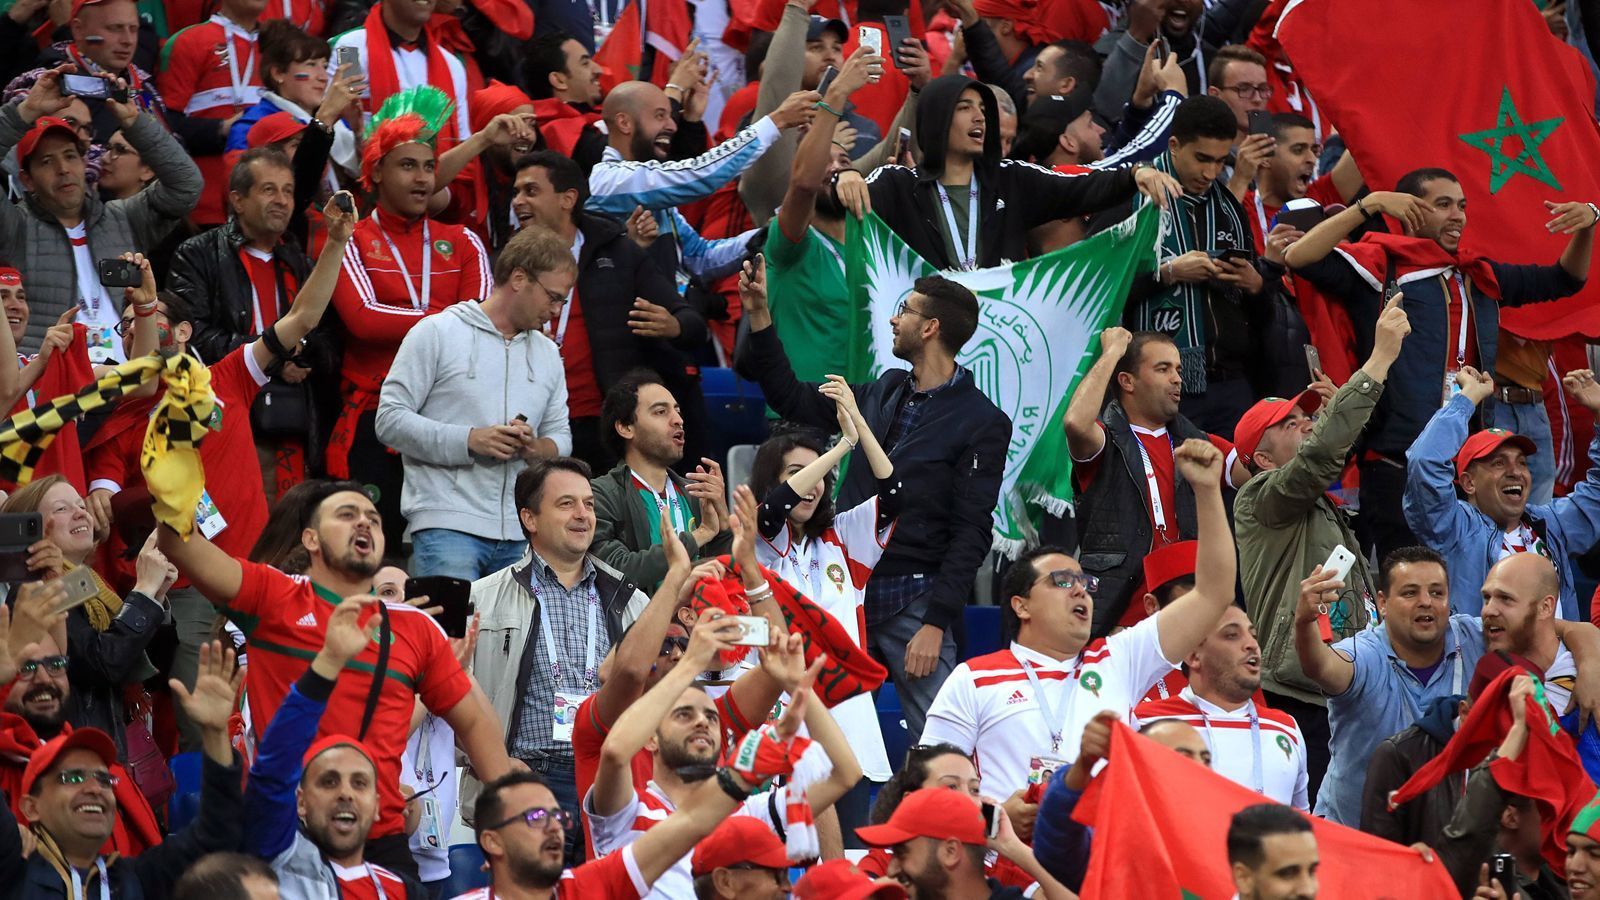 
                <strong>5. Marokko: 55.951 Euro wegen Fehlverhalten von Offiziellen und Fans</strong><br>
                Marokko musste 55.951 Euro wegen Fehlverhalten von Offiziellen (unerlaubtes Betreten des Platzes, zu vielen Personen in der Coaching-Zone) und Fans (Werfen von Gegenständen) zahlen.
              